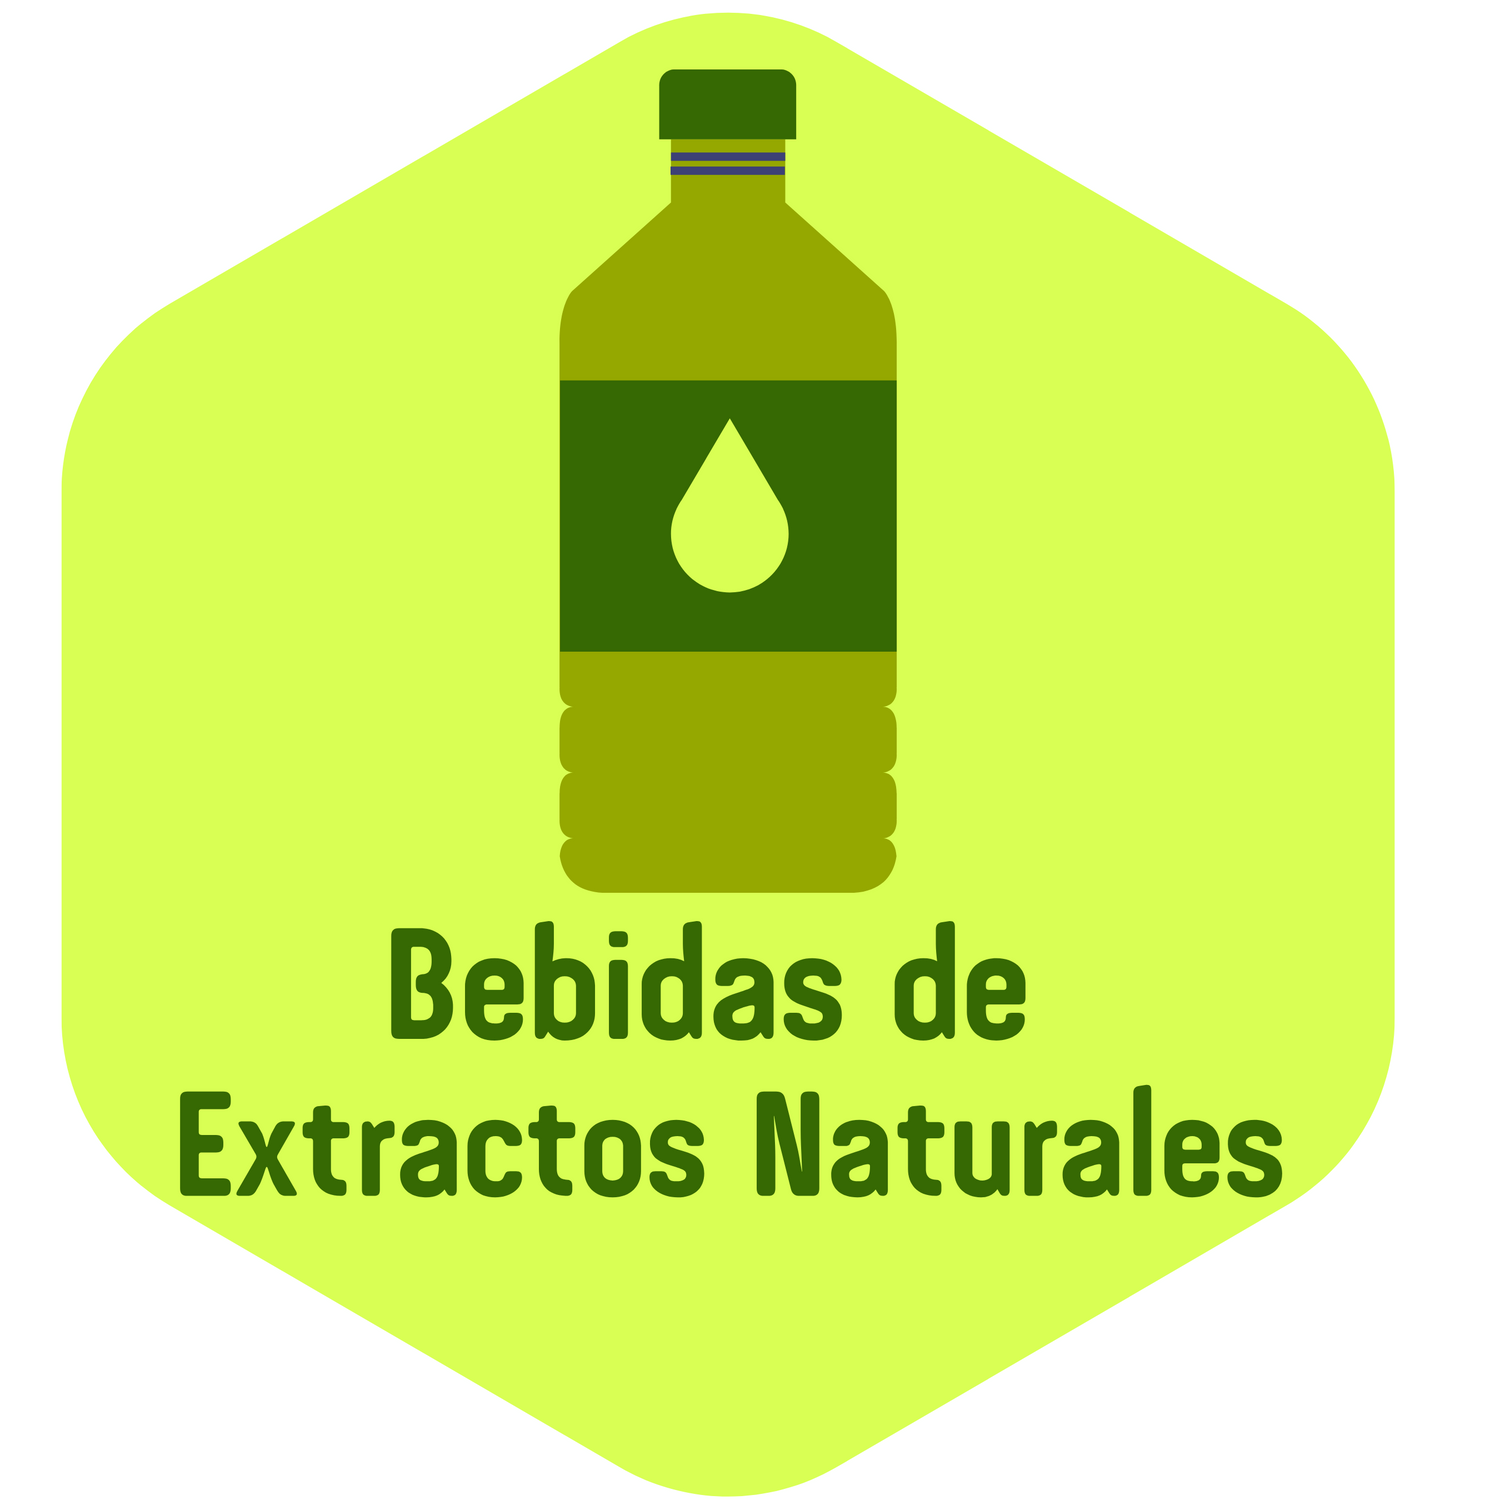 Bebidas de Extractos Naturales